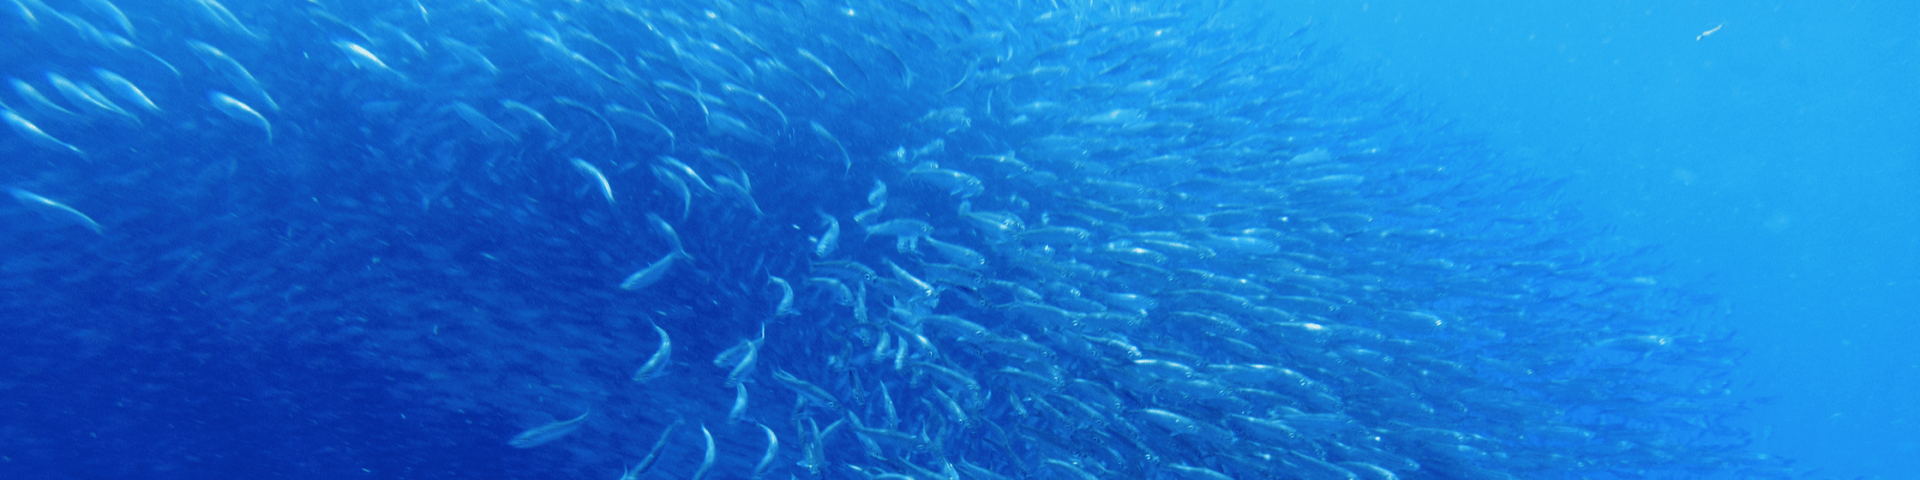 Fischschwarm als Metapher für systemische Selbstorganisation, lebendige und dynamische Kraft von Systemen, lebendigen Systemen, neue Perspektiven, Wahlmöglichkeiten, Mindful-bwl, systemic, vibrant systems